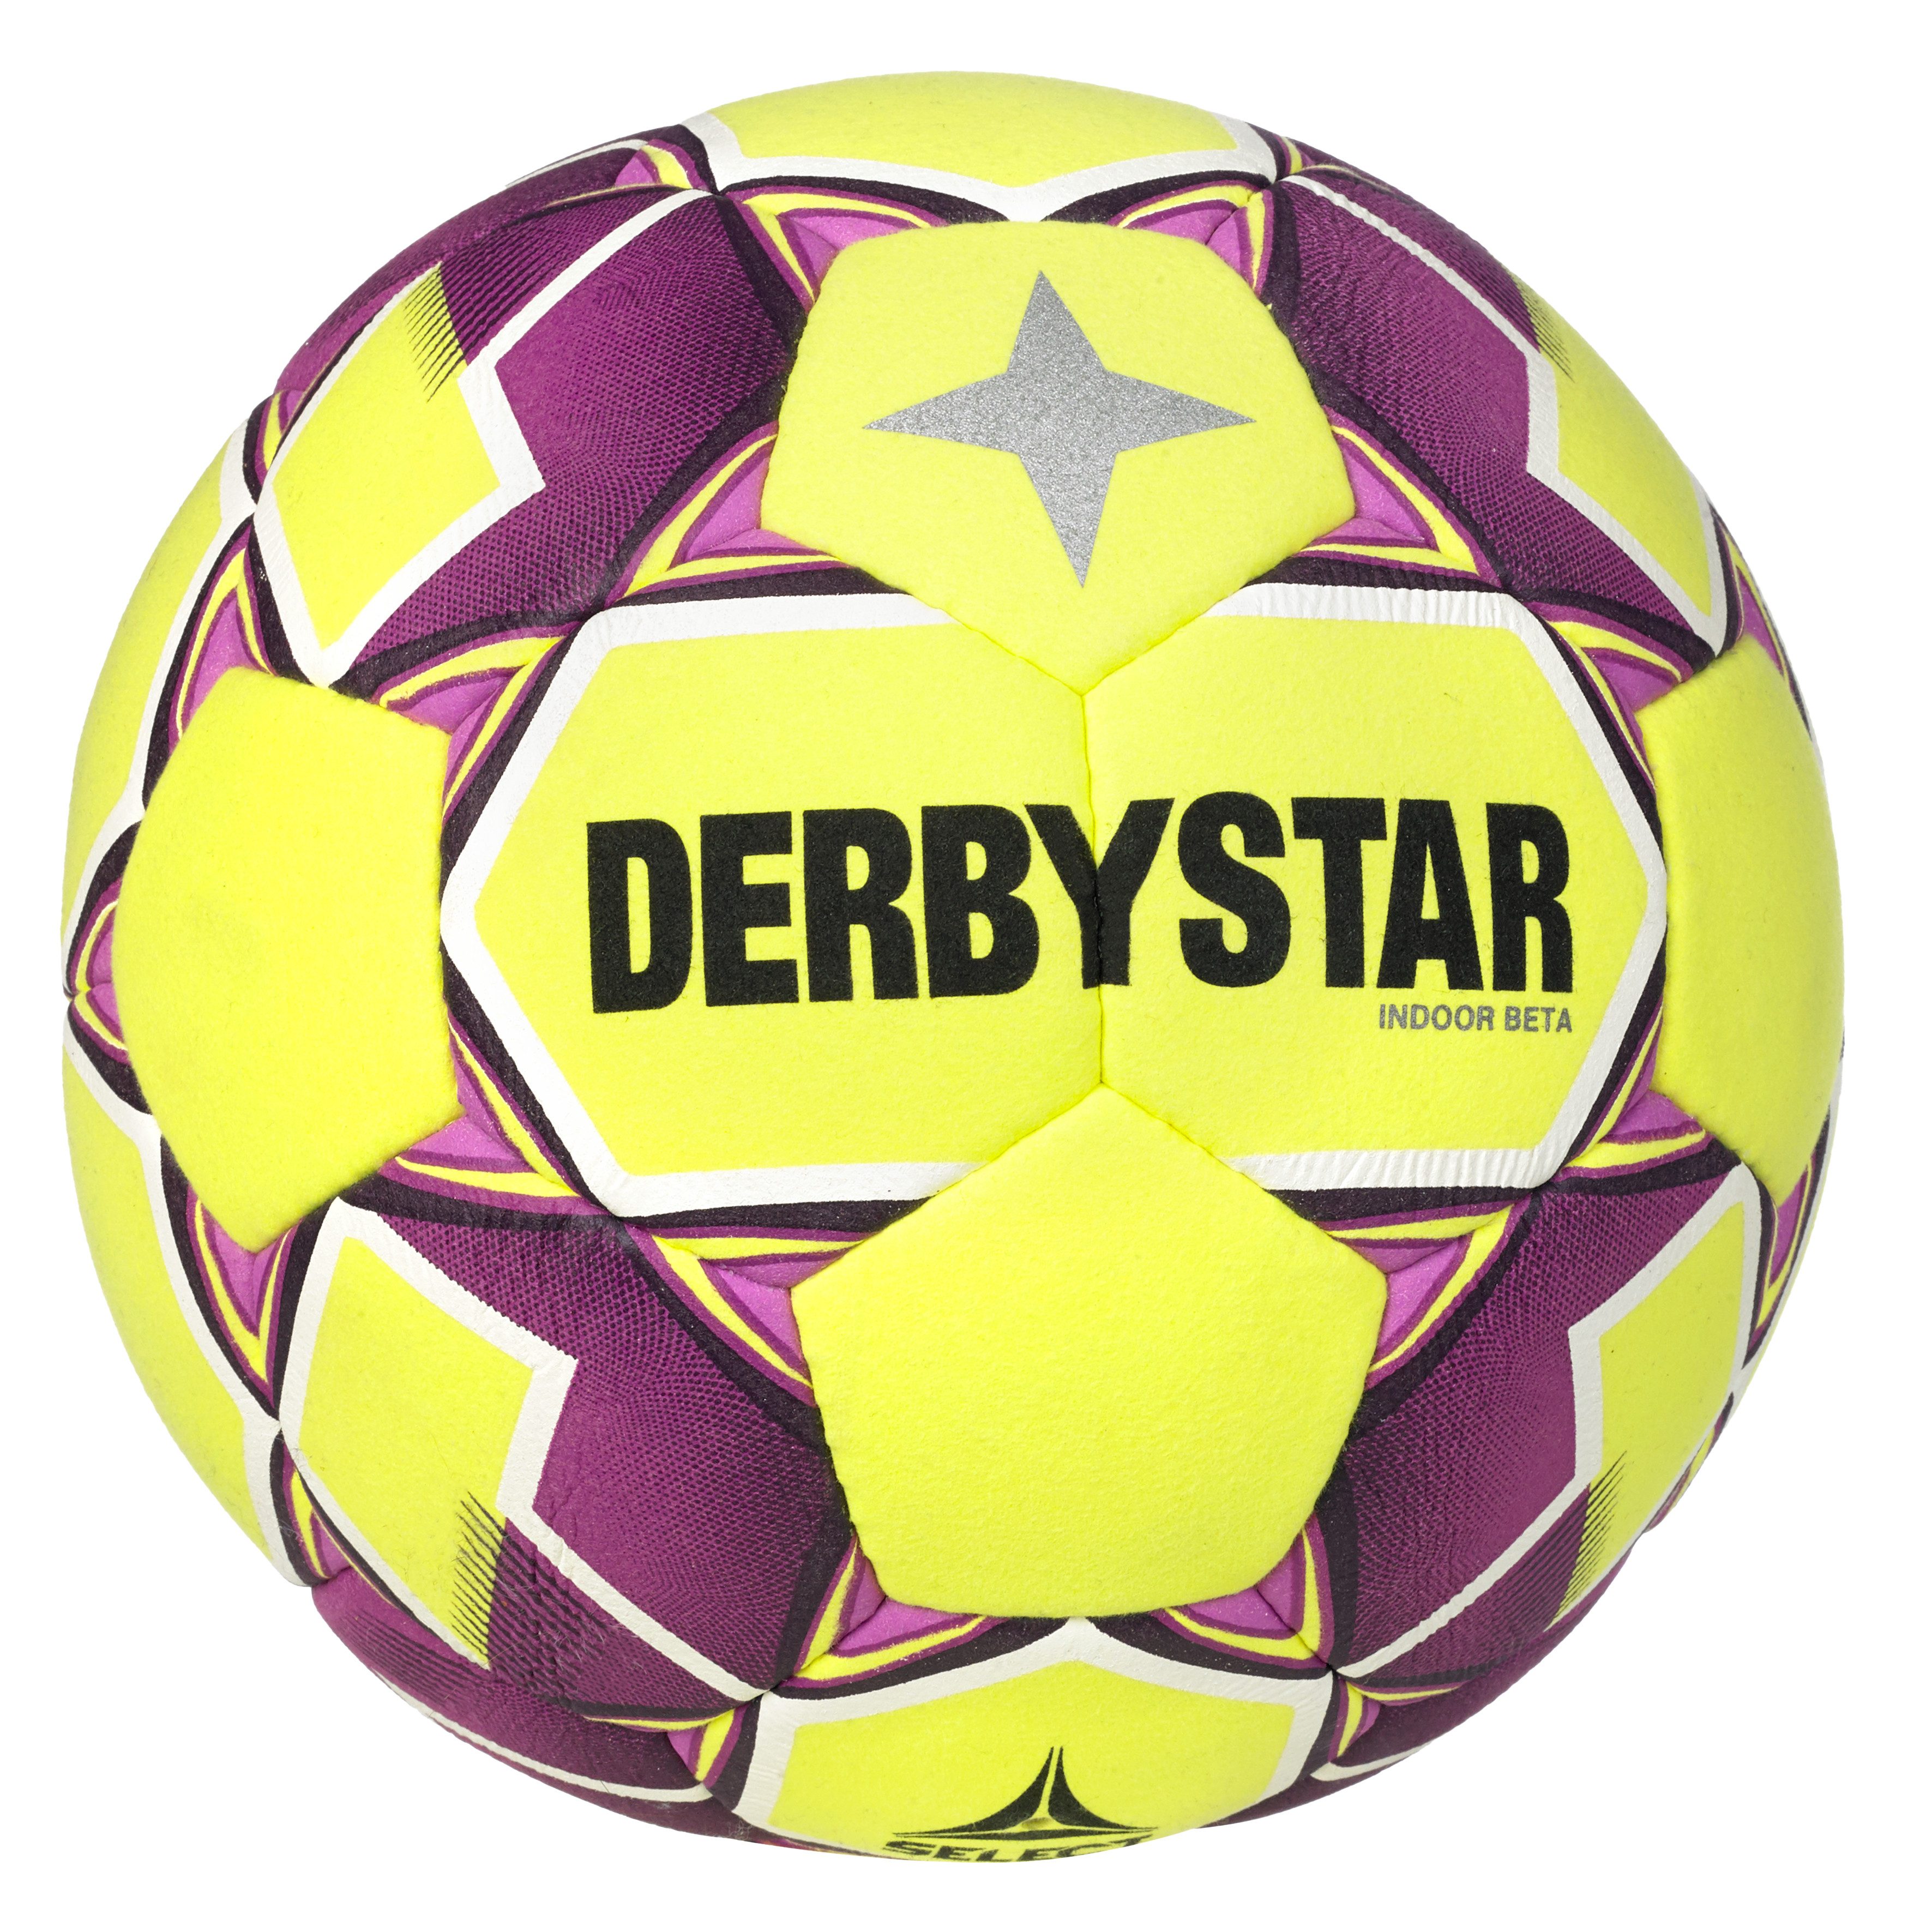 Derbystar Fußball DERBYSTAR Indoor Beta v24